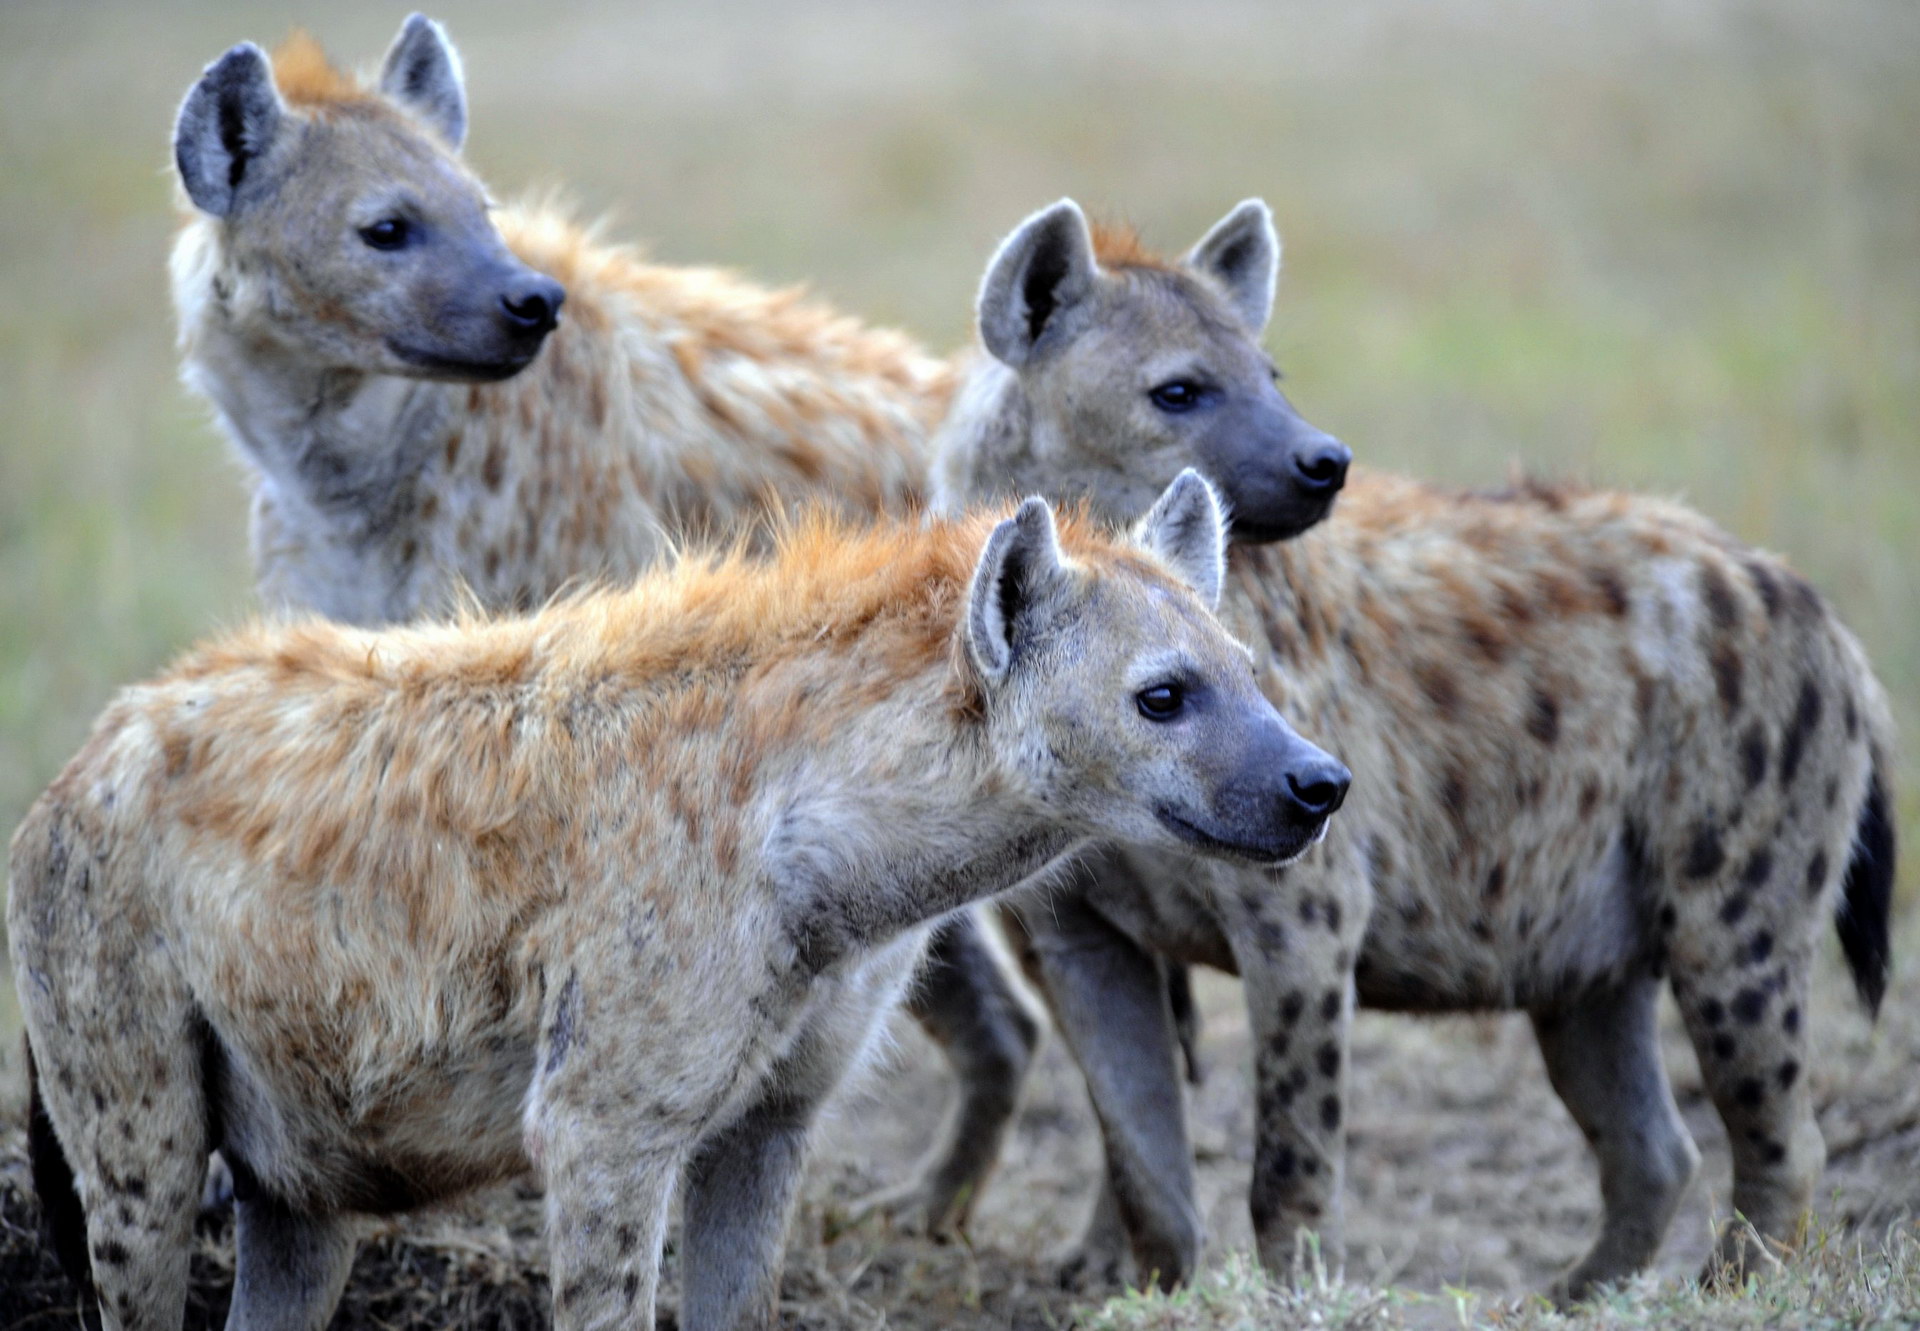 ʻO ka hulu o nā hyenas